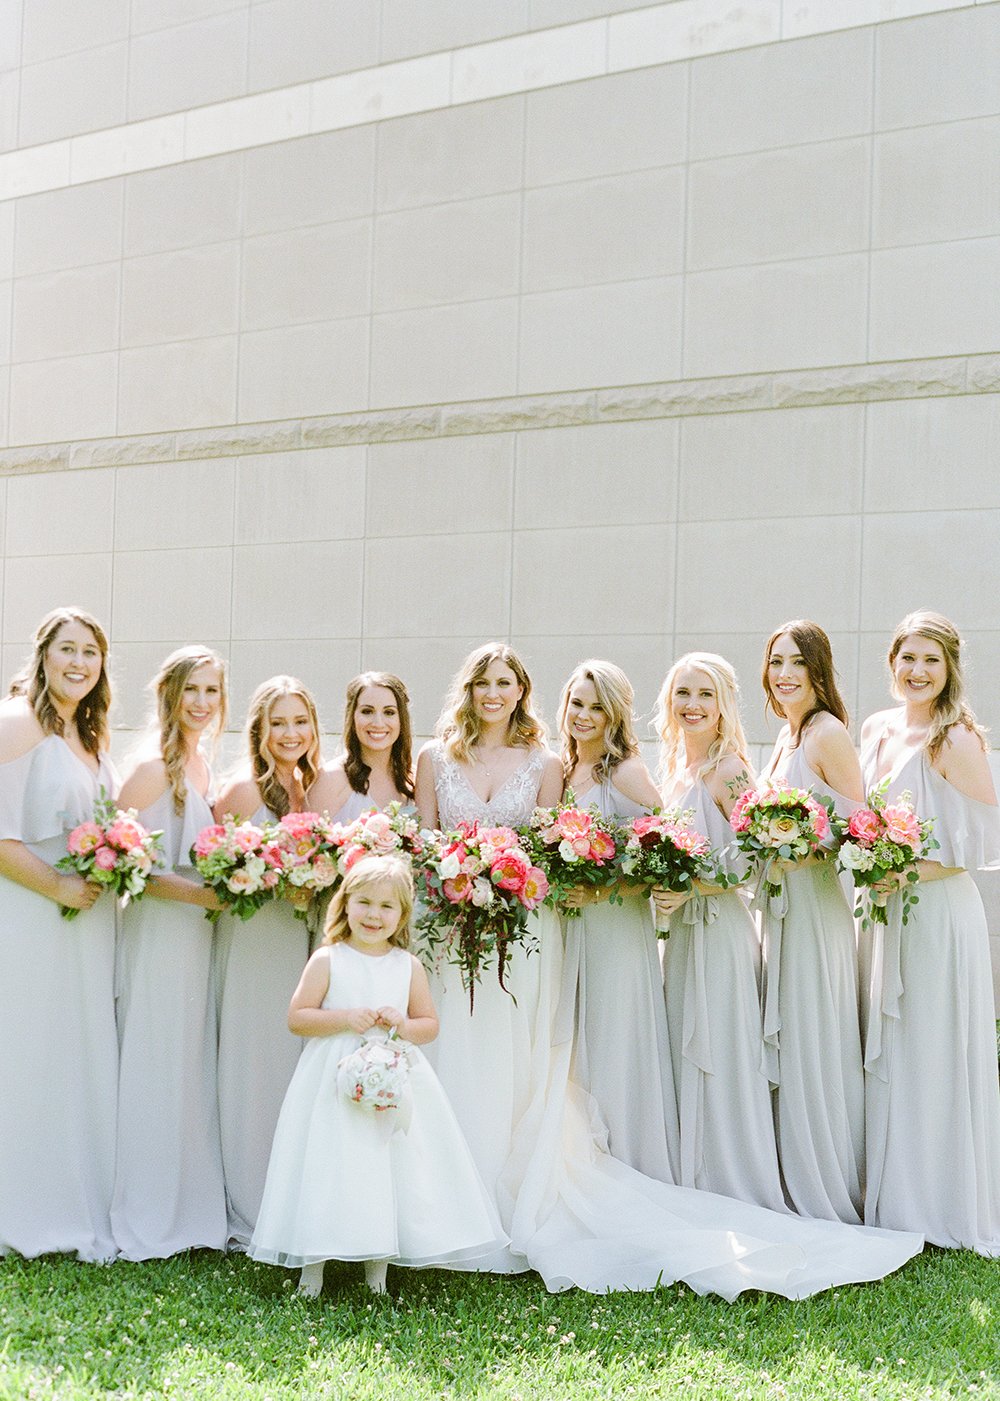 wedding party - bridesmaids dresses - gray - bride